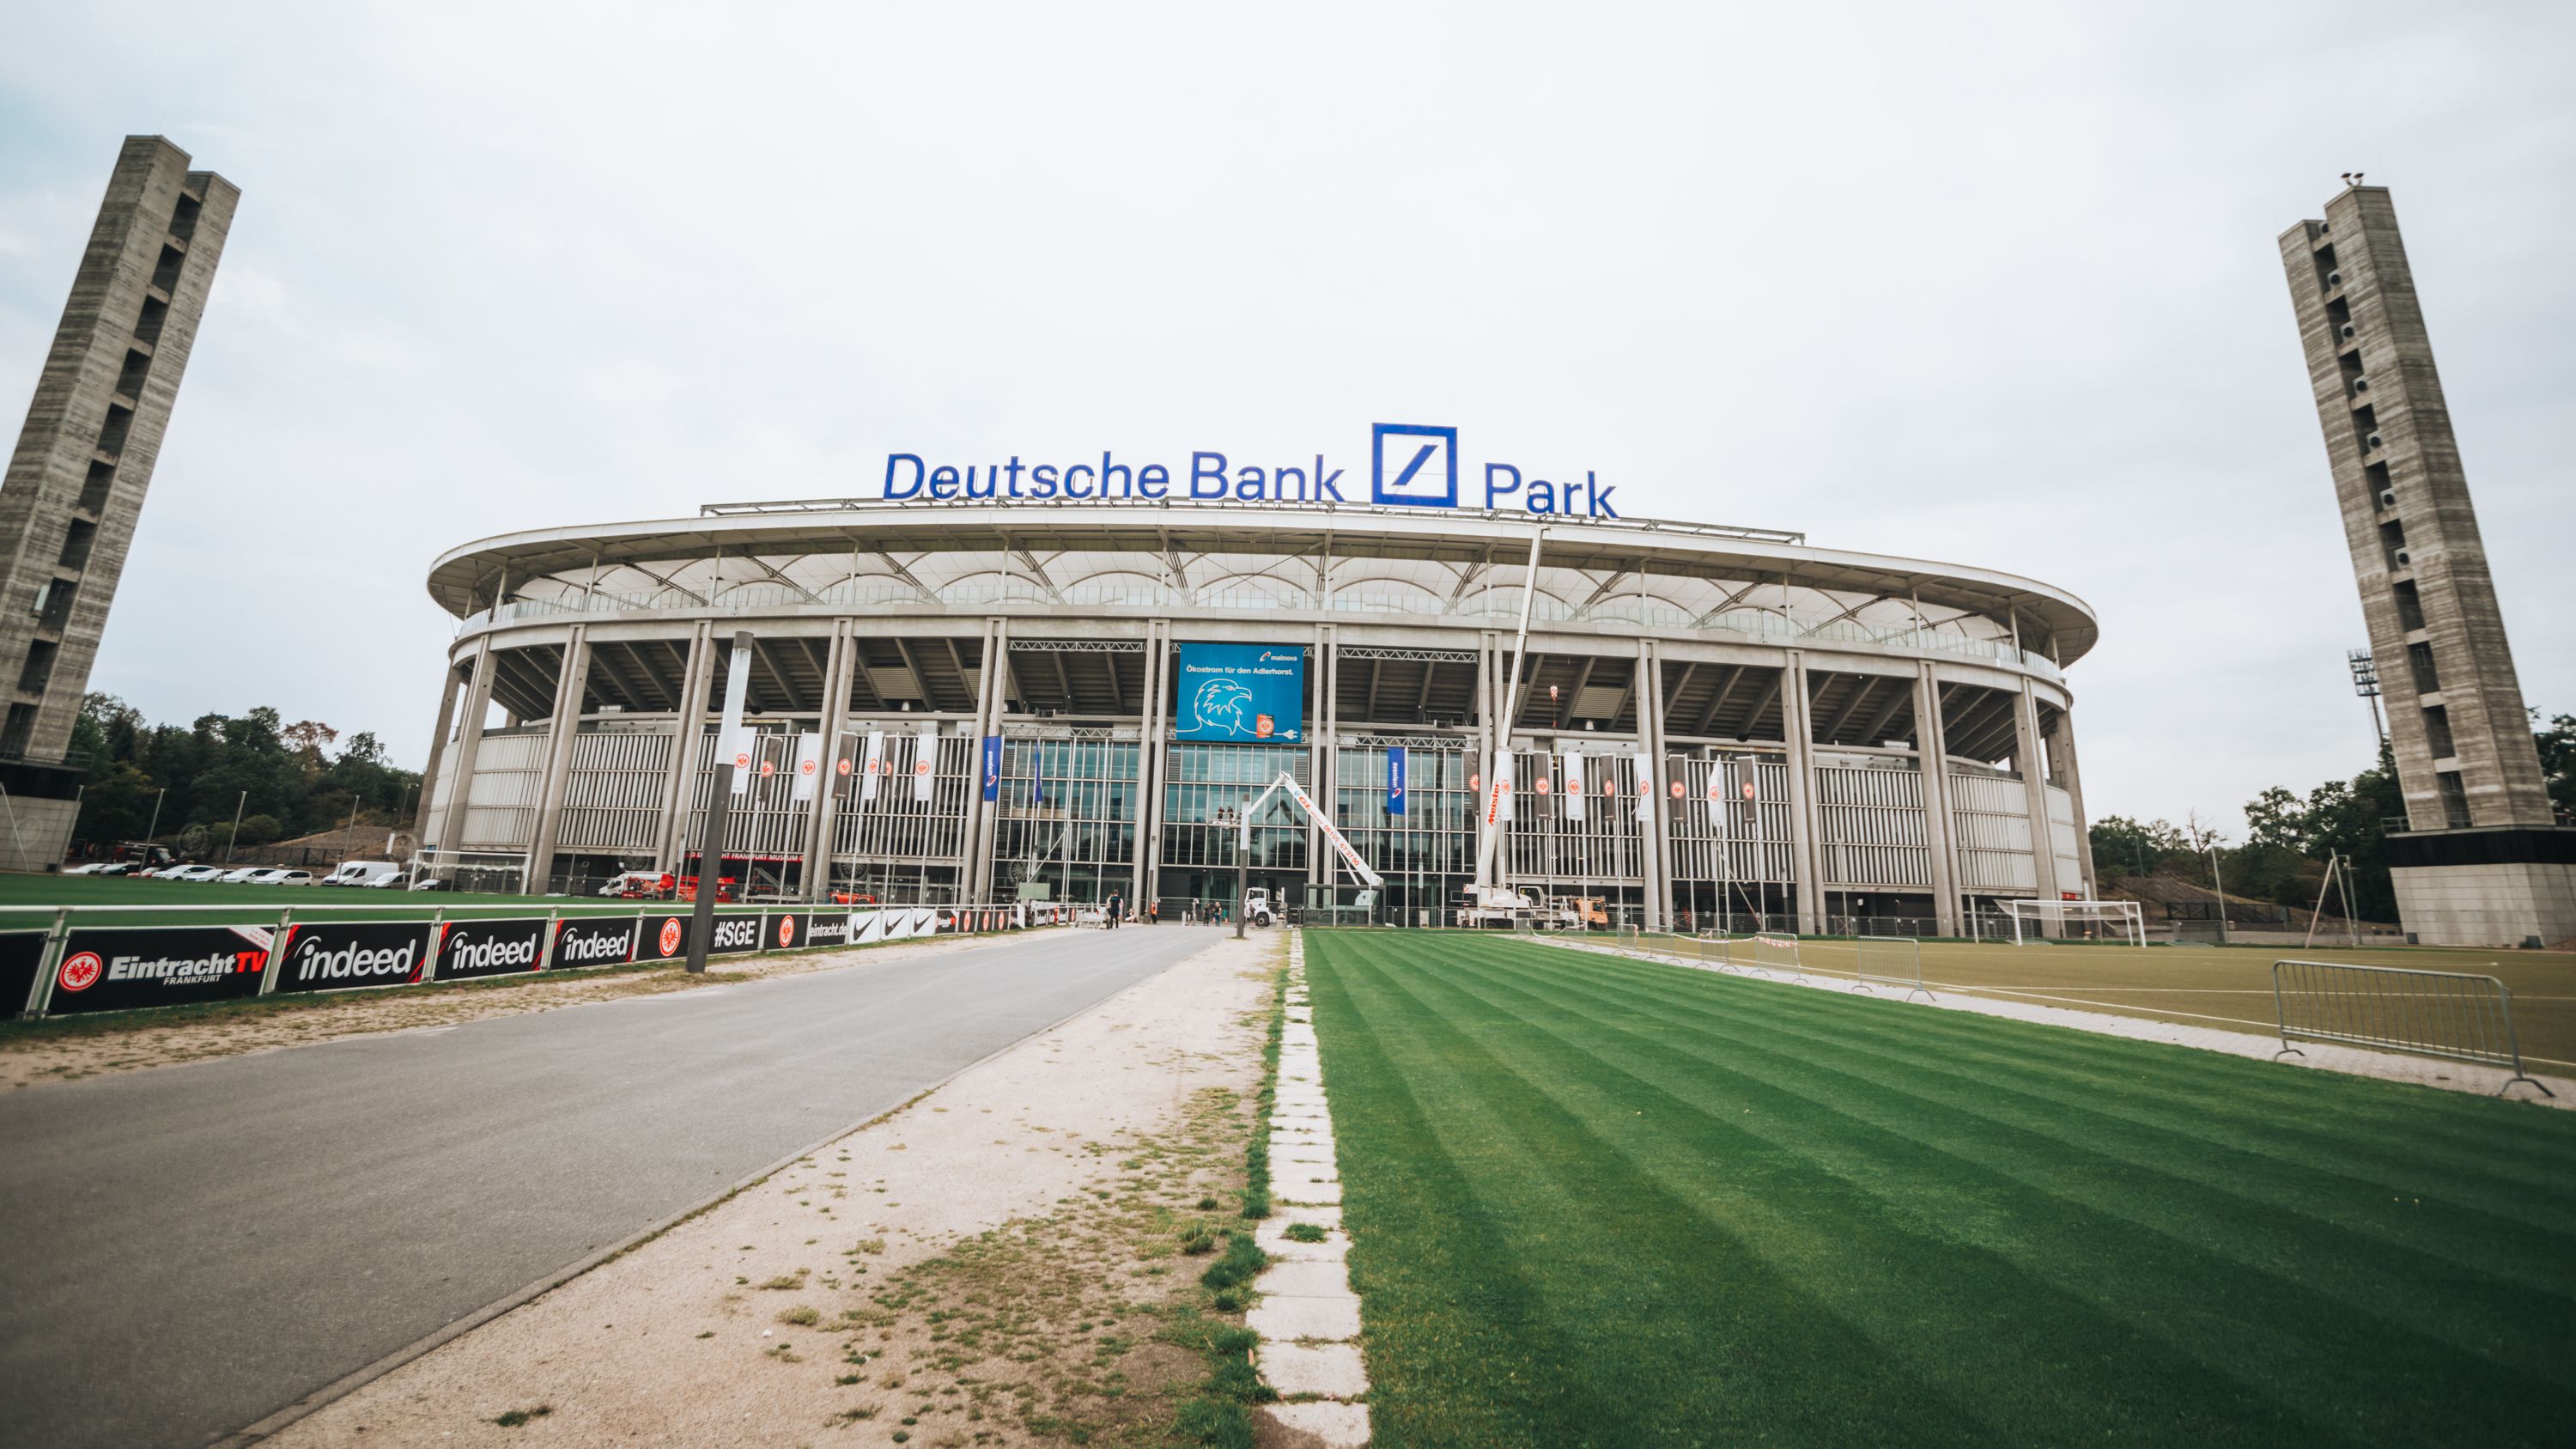 Deutsche Bank Park öffnet seine Tore - Deutsche Bank Park